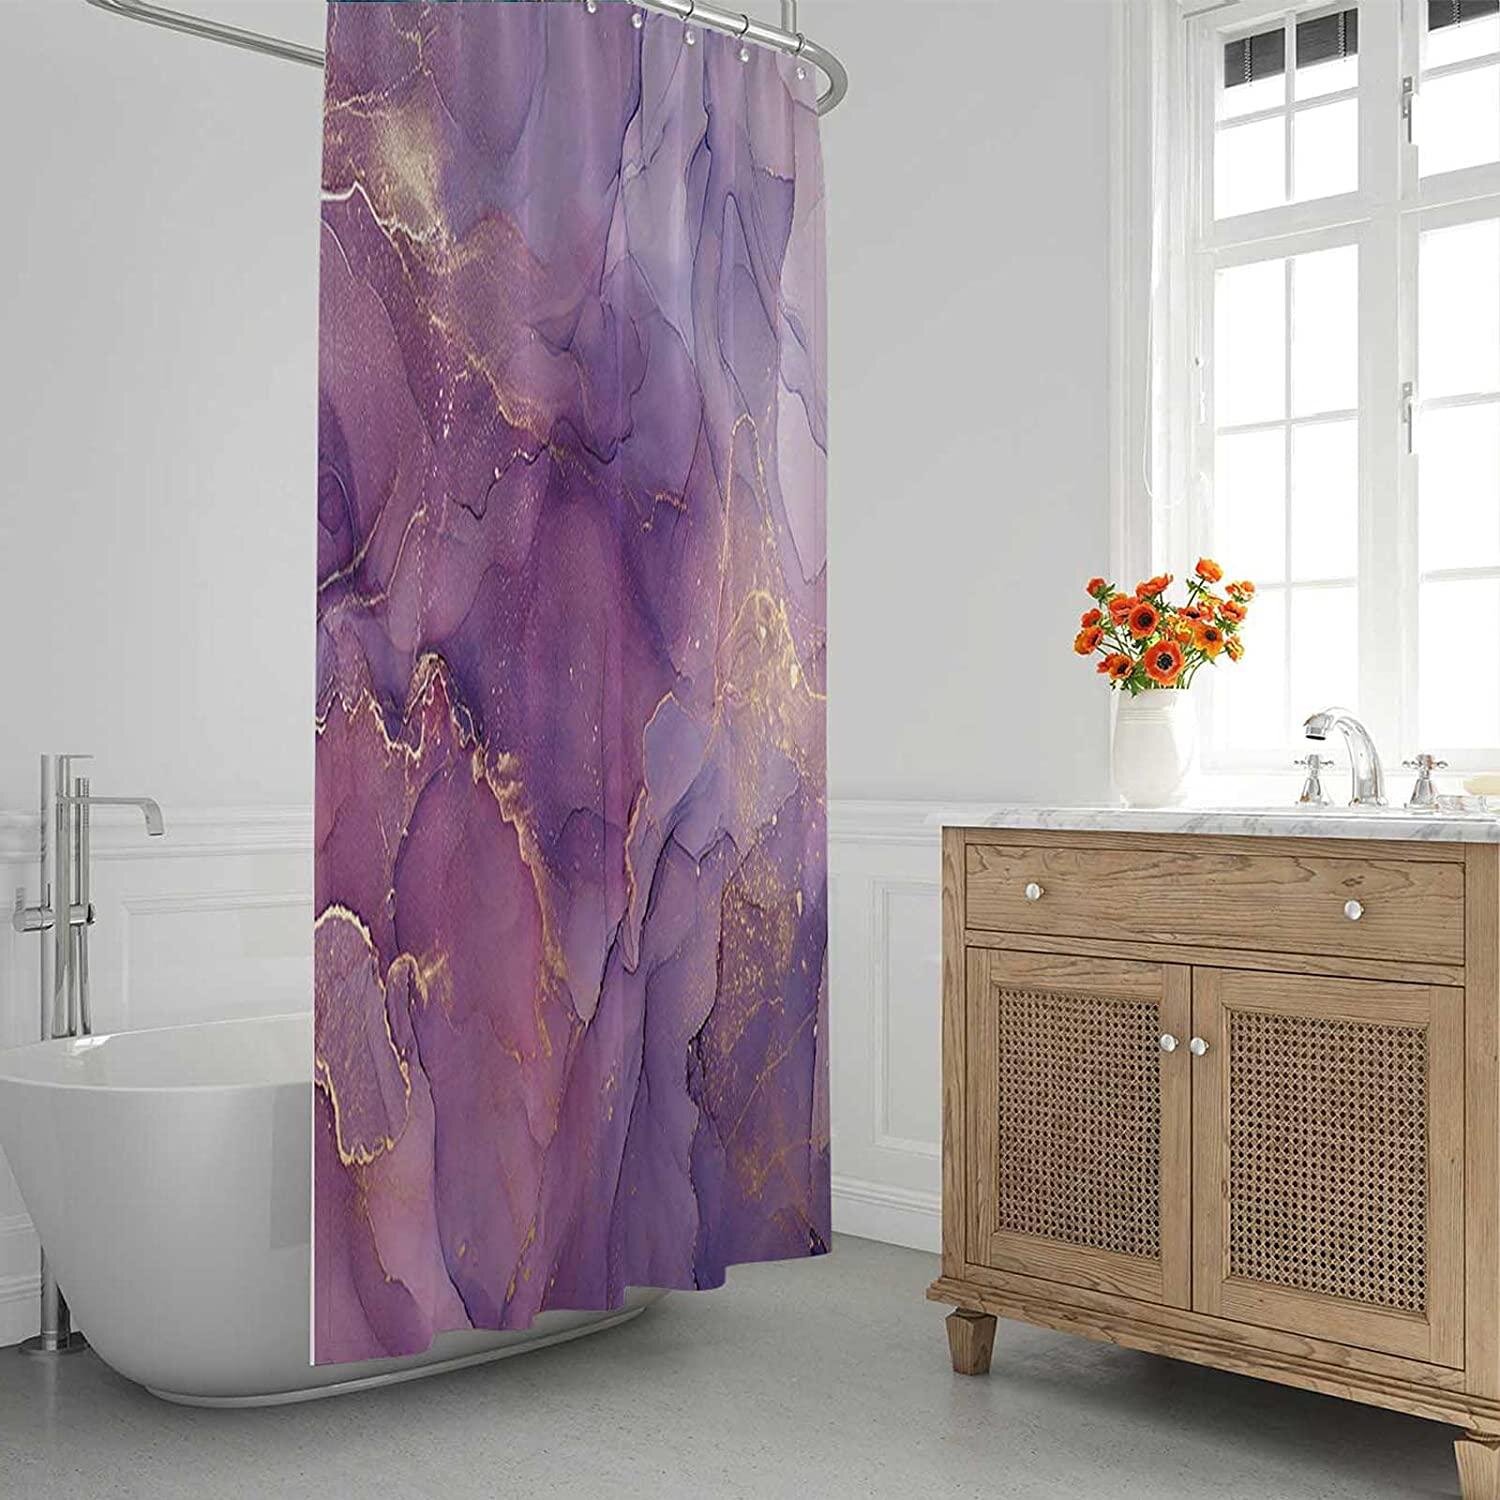 72X72" Abstract Shower Curtain Gold Debris Bathroom Fabric Bath Curtains Mat Rug 